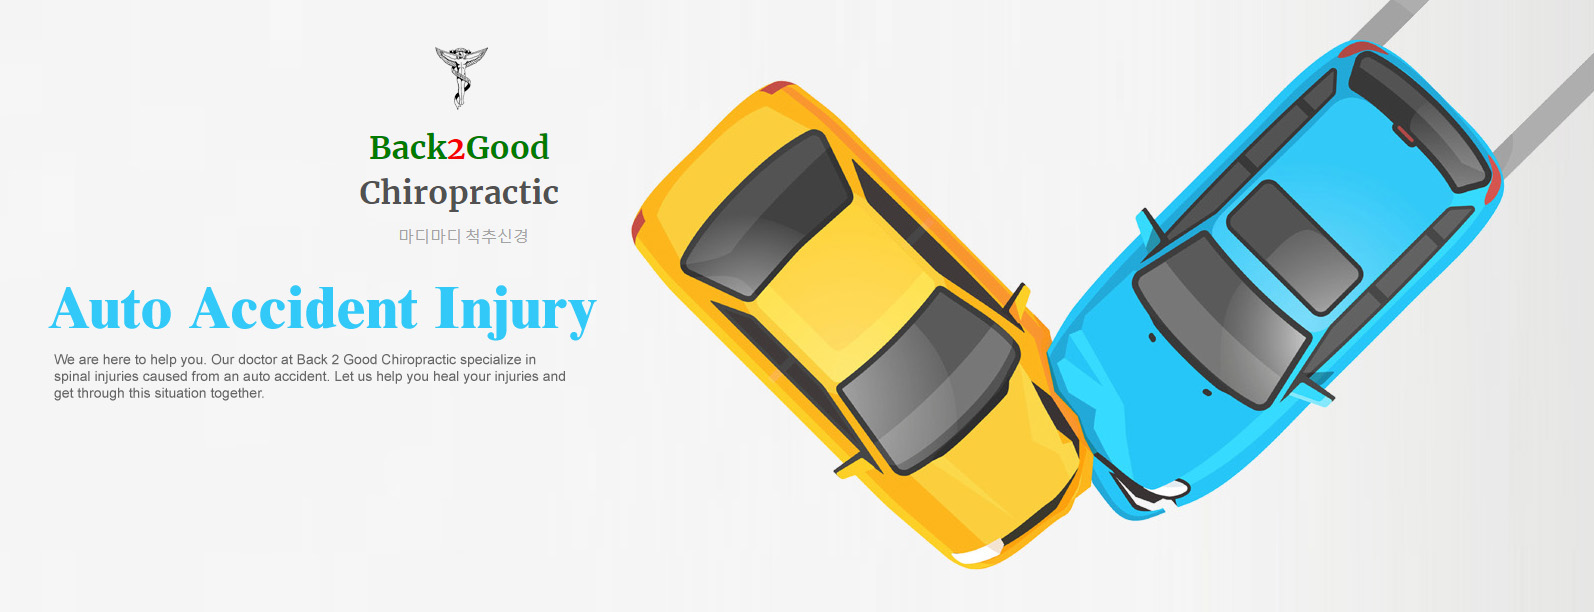 Back2Good Chiropractic | 마디마디 척추신경 | Auto Accident Chiropractor in Fairfax, Chiropractic in Fairfax, VA